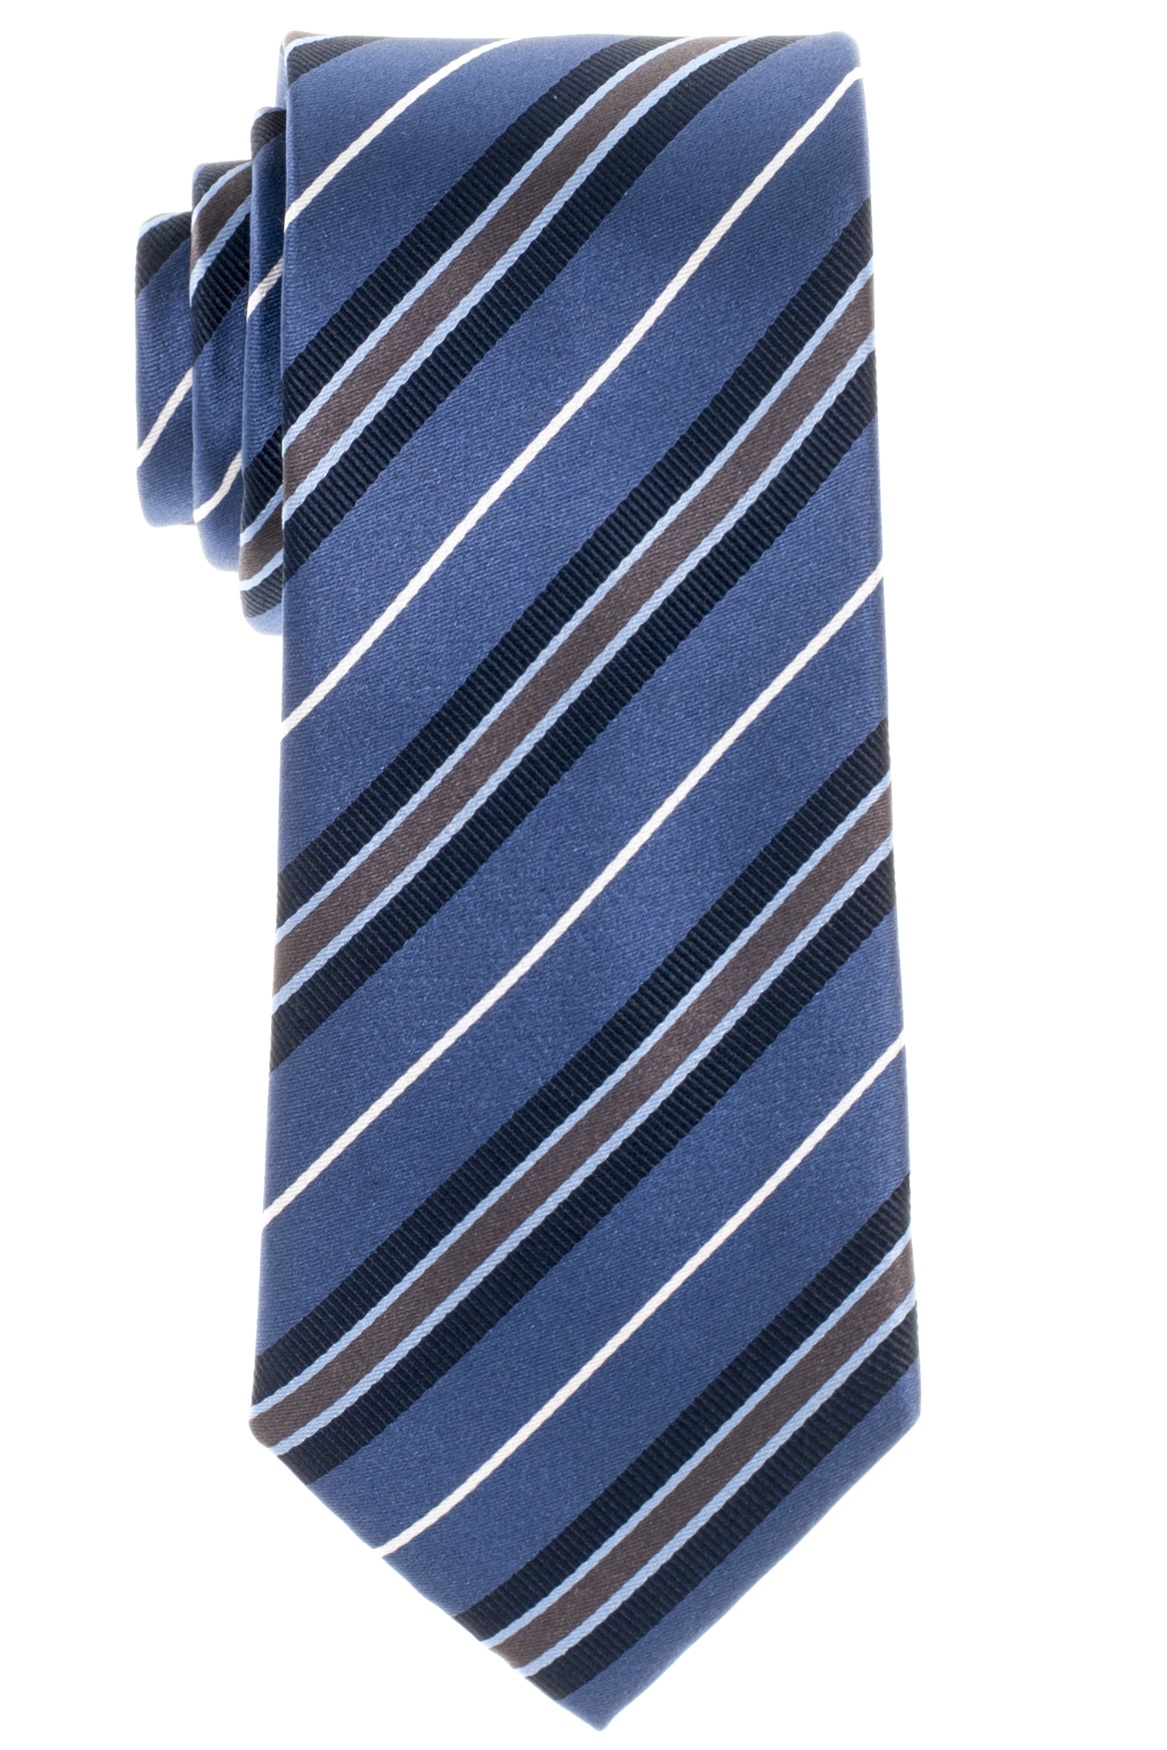 Gestreifte Eterna marine Krawatte cm weiß 68 Hemden und ETERNA + blau Lang und 72 grau-braun | Extra in Olymp